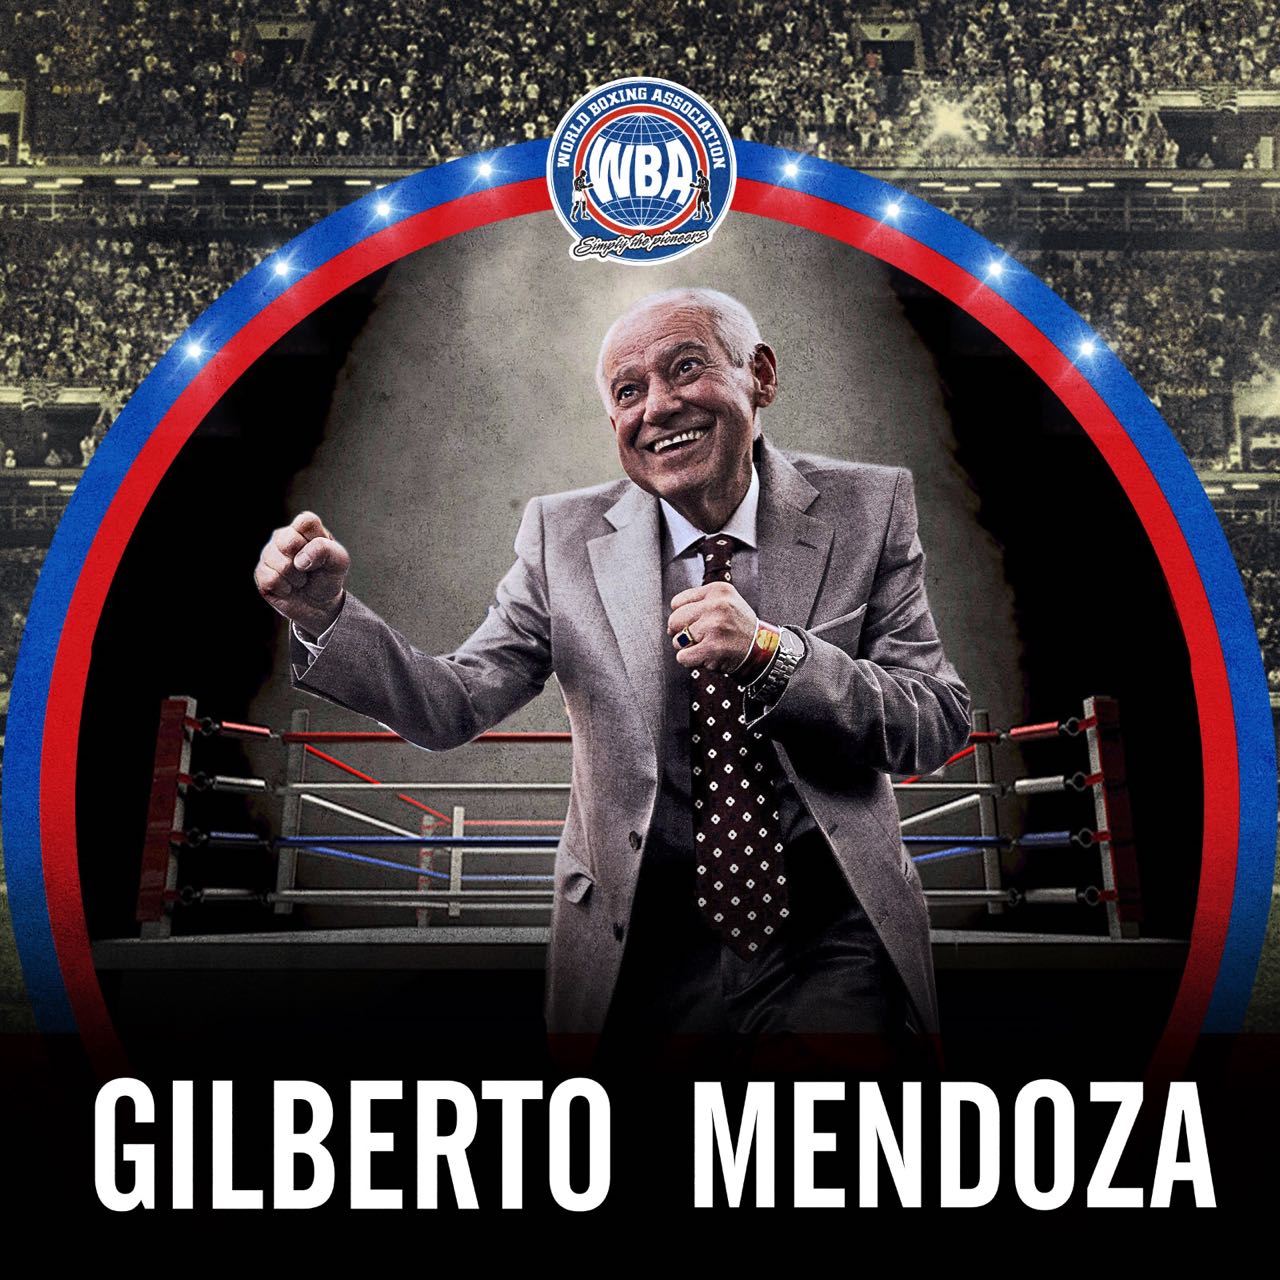 Gilberto Mendoza Festival starts this Saturday in Venezuela